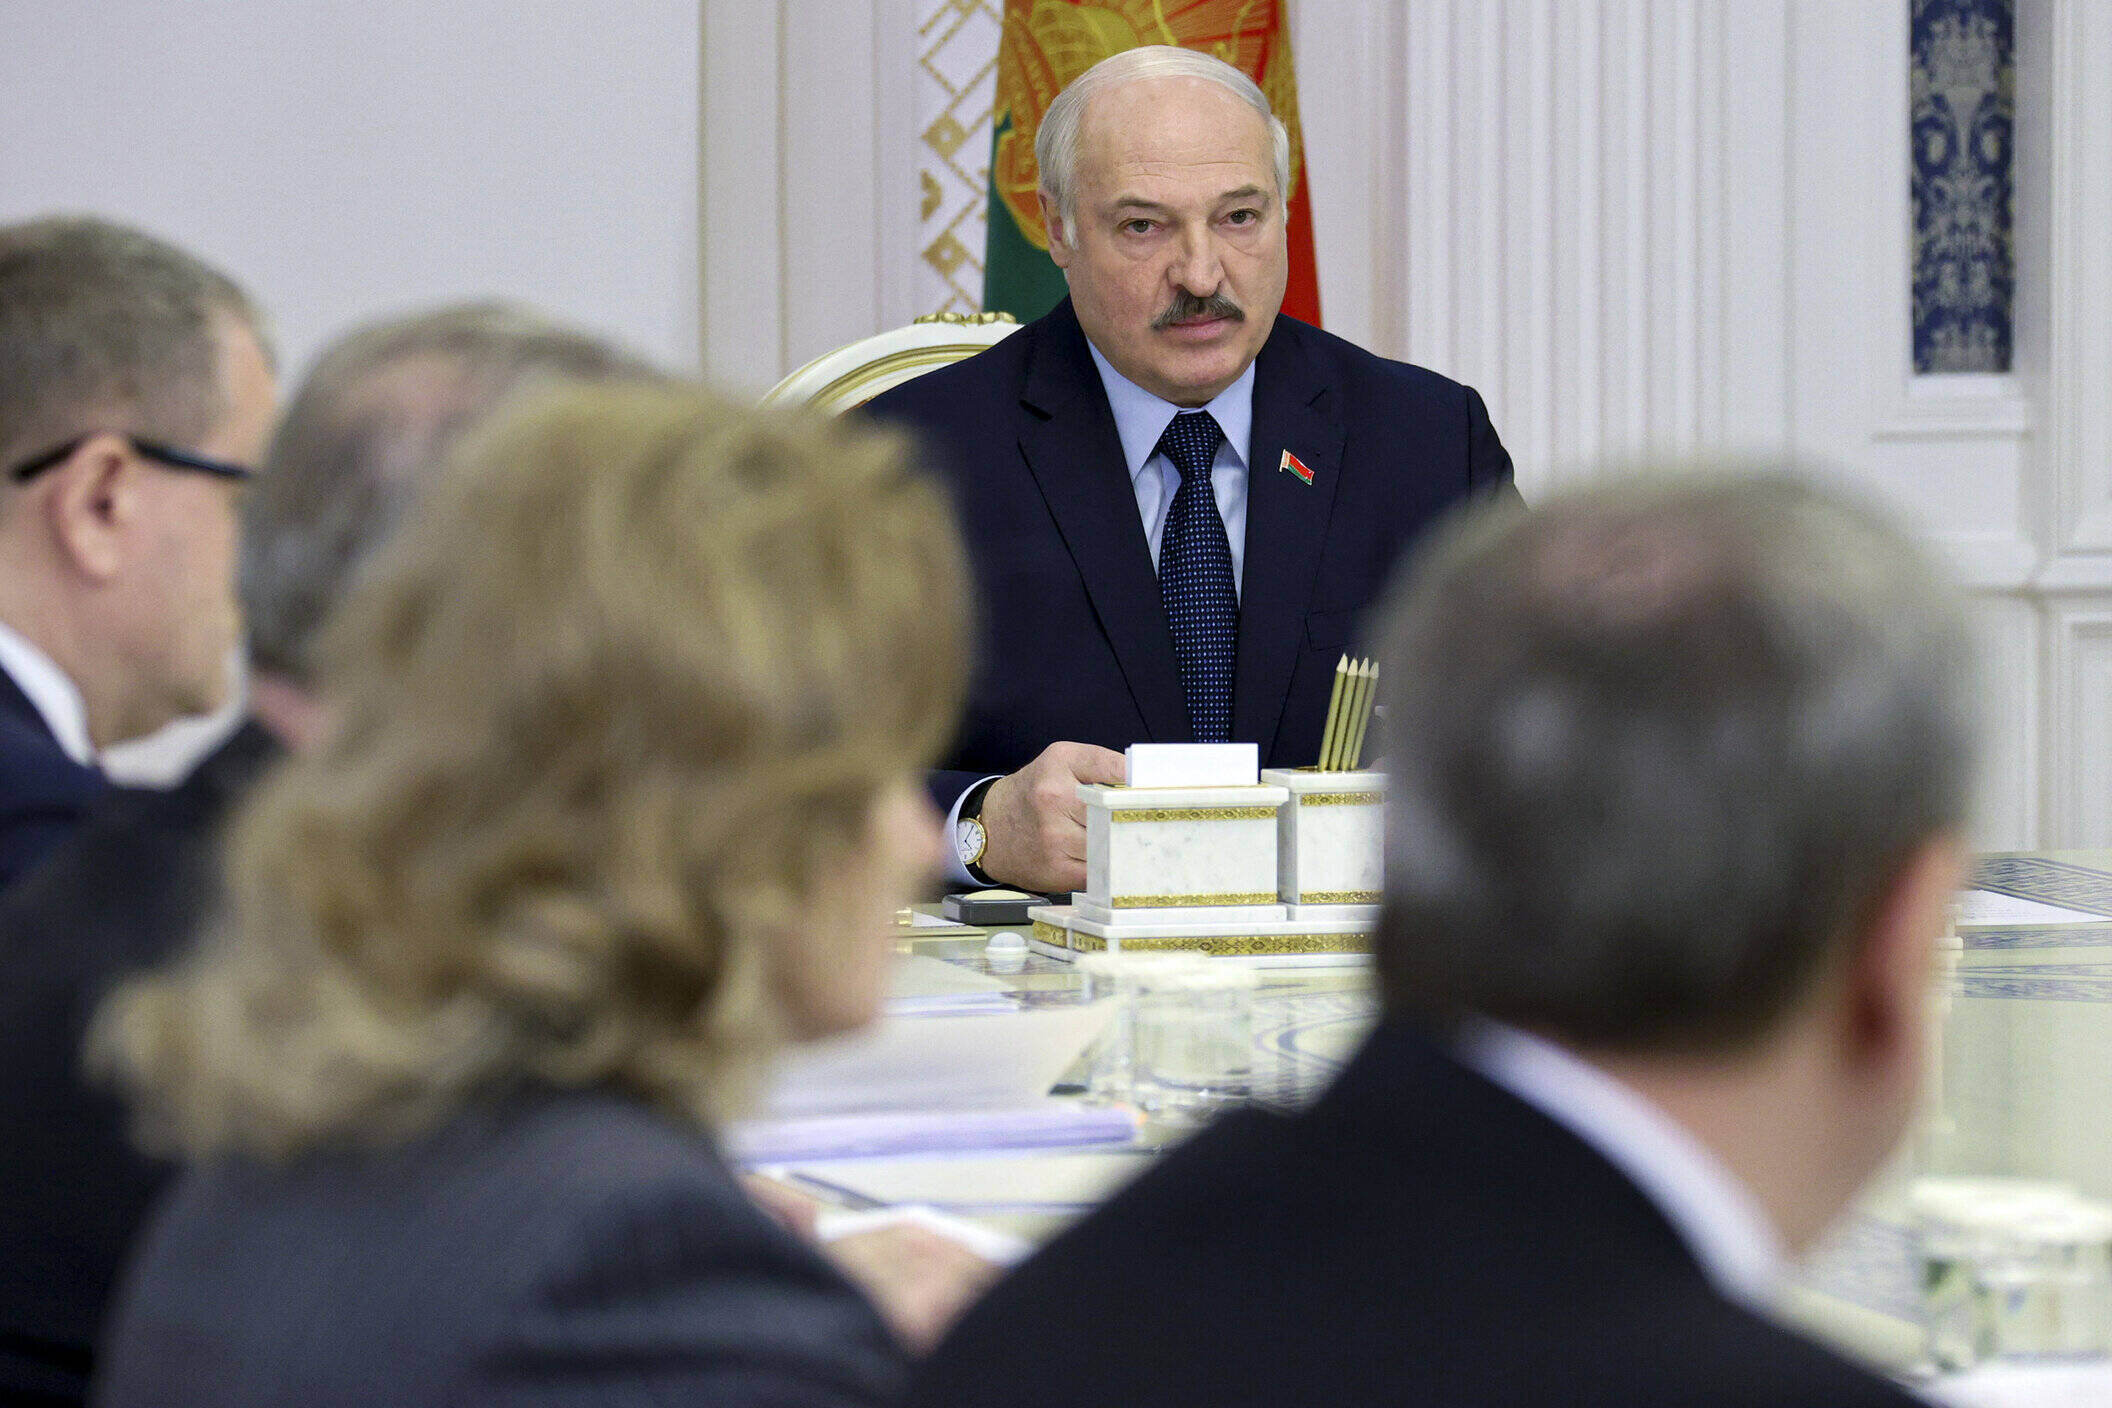 Belaurs, Alexander Lukashenko, Germany, Angela Merkel, migrants, corridor